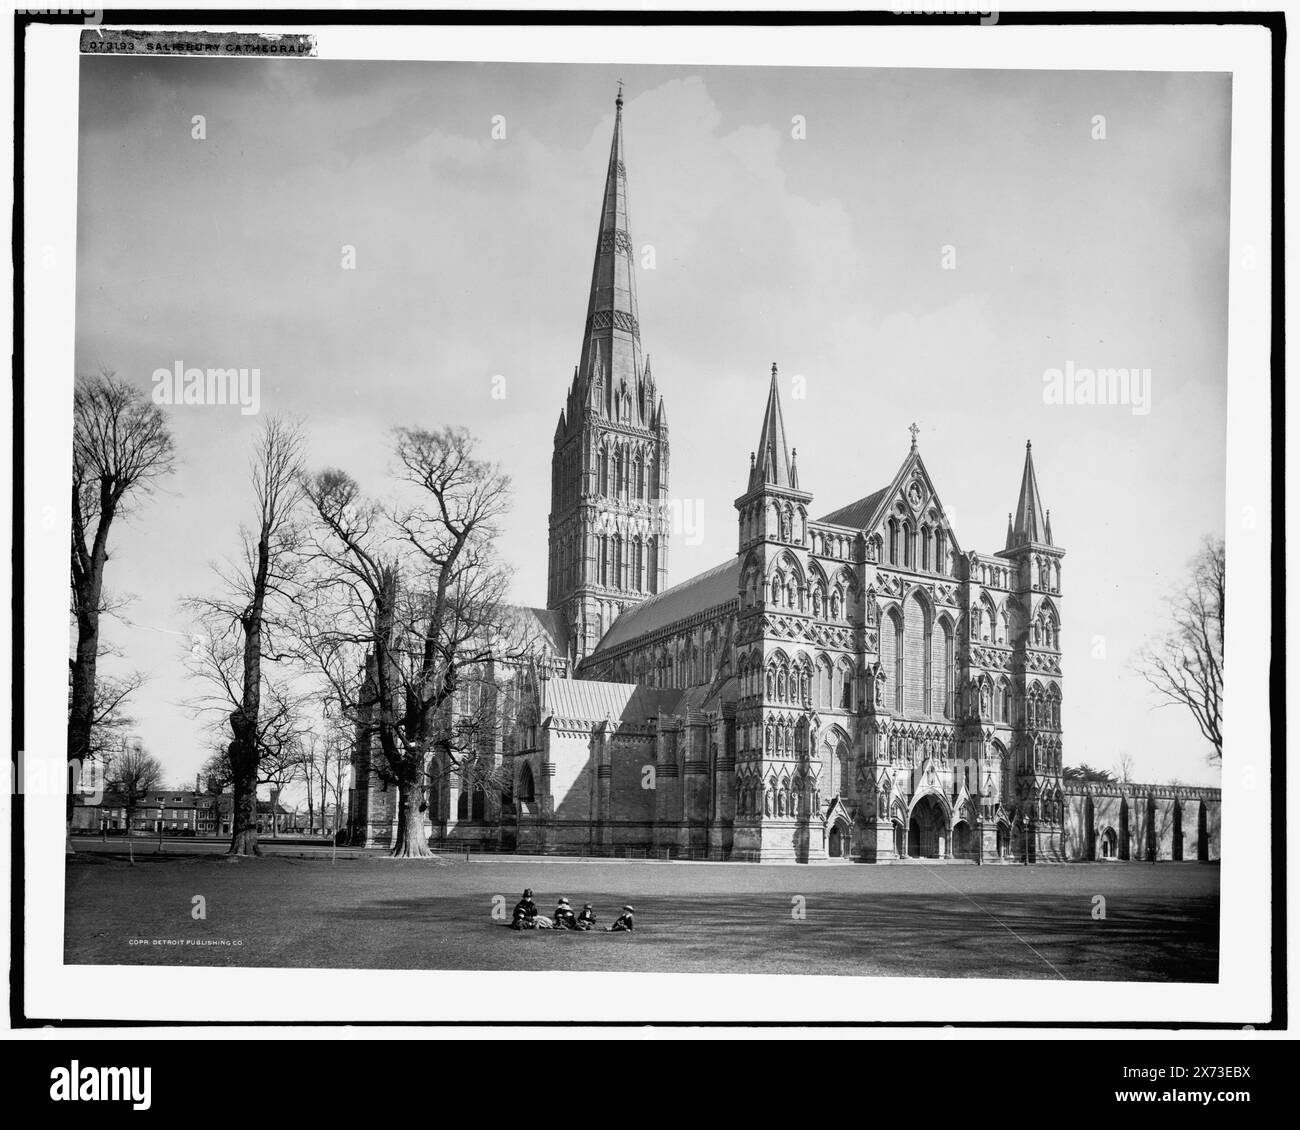 Cattedrale di Salisbury, negativo incrinato da sinistra da centro a destra in basso., Detroit Publishing Co. N. 073193., Gift; State Historical Society of Colorado; 1949, Cathedrals. Inghilterra, Wiltshire, Salisbury. Foto Stock